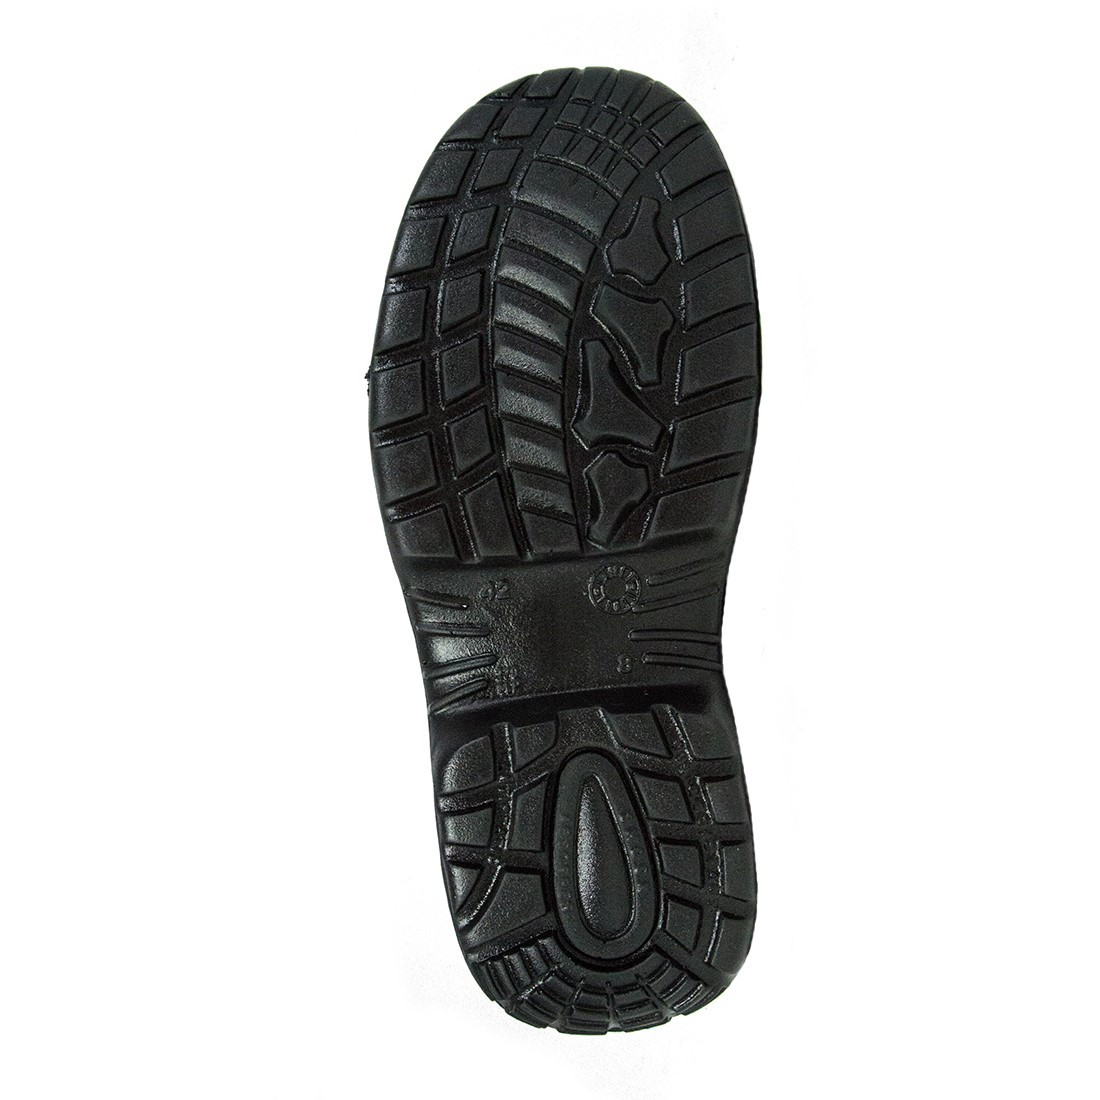 Paddington Shoe S1P SRC - Les chaussures de protection